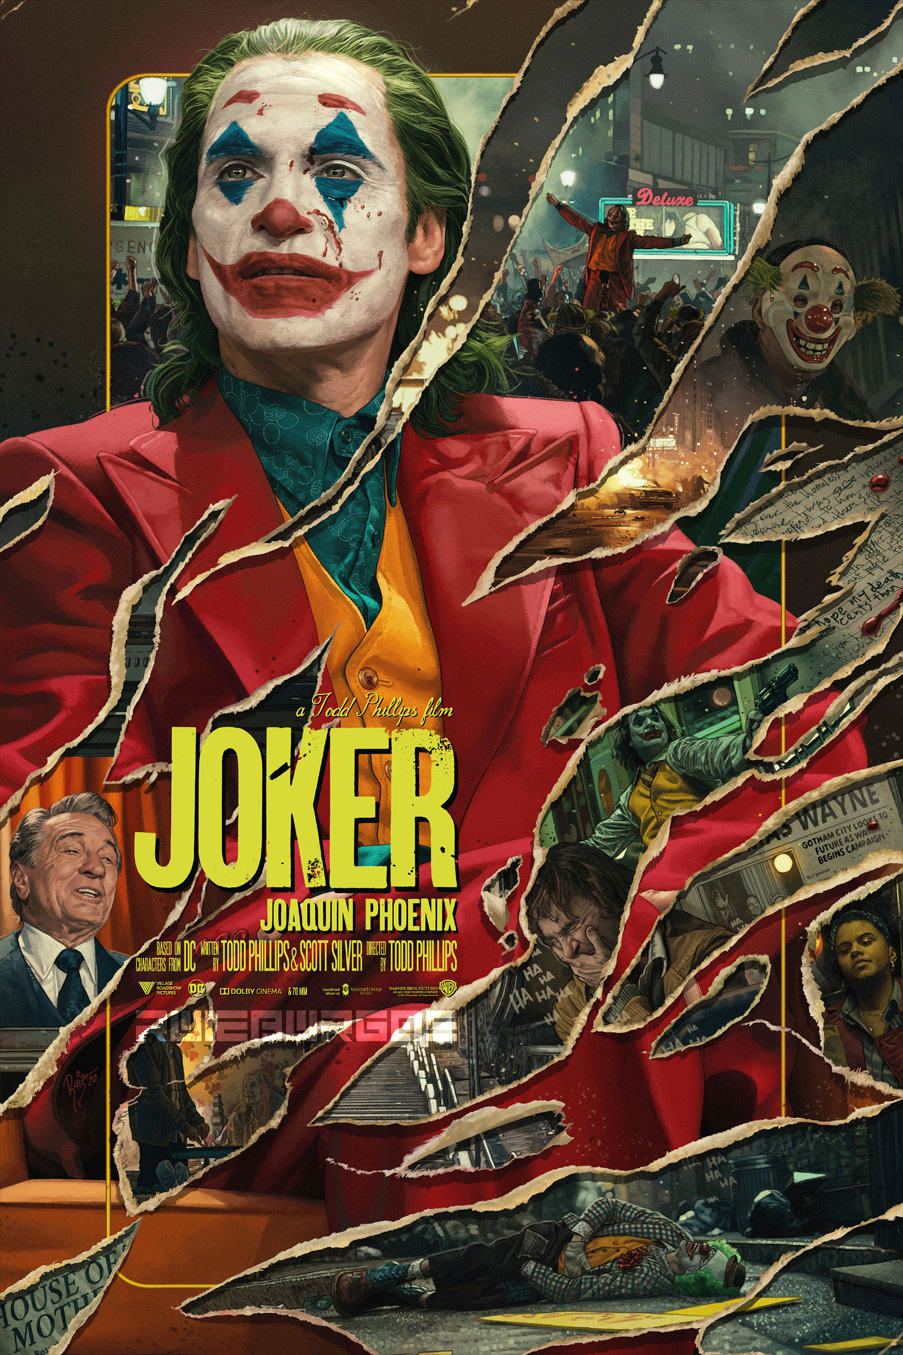 Juan Carlos Ruiz Burgos Predator 2 Movie Poster 2021